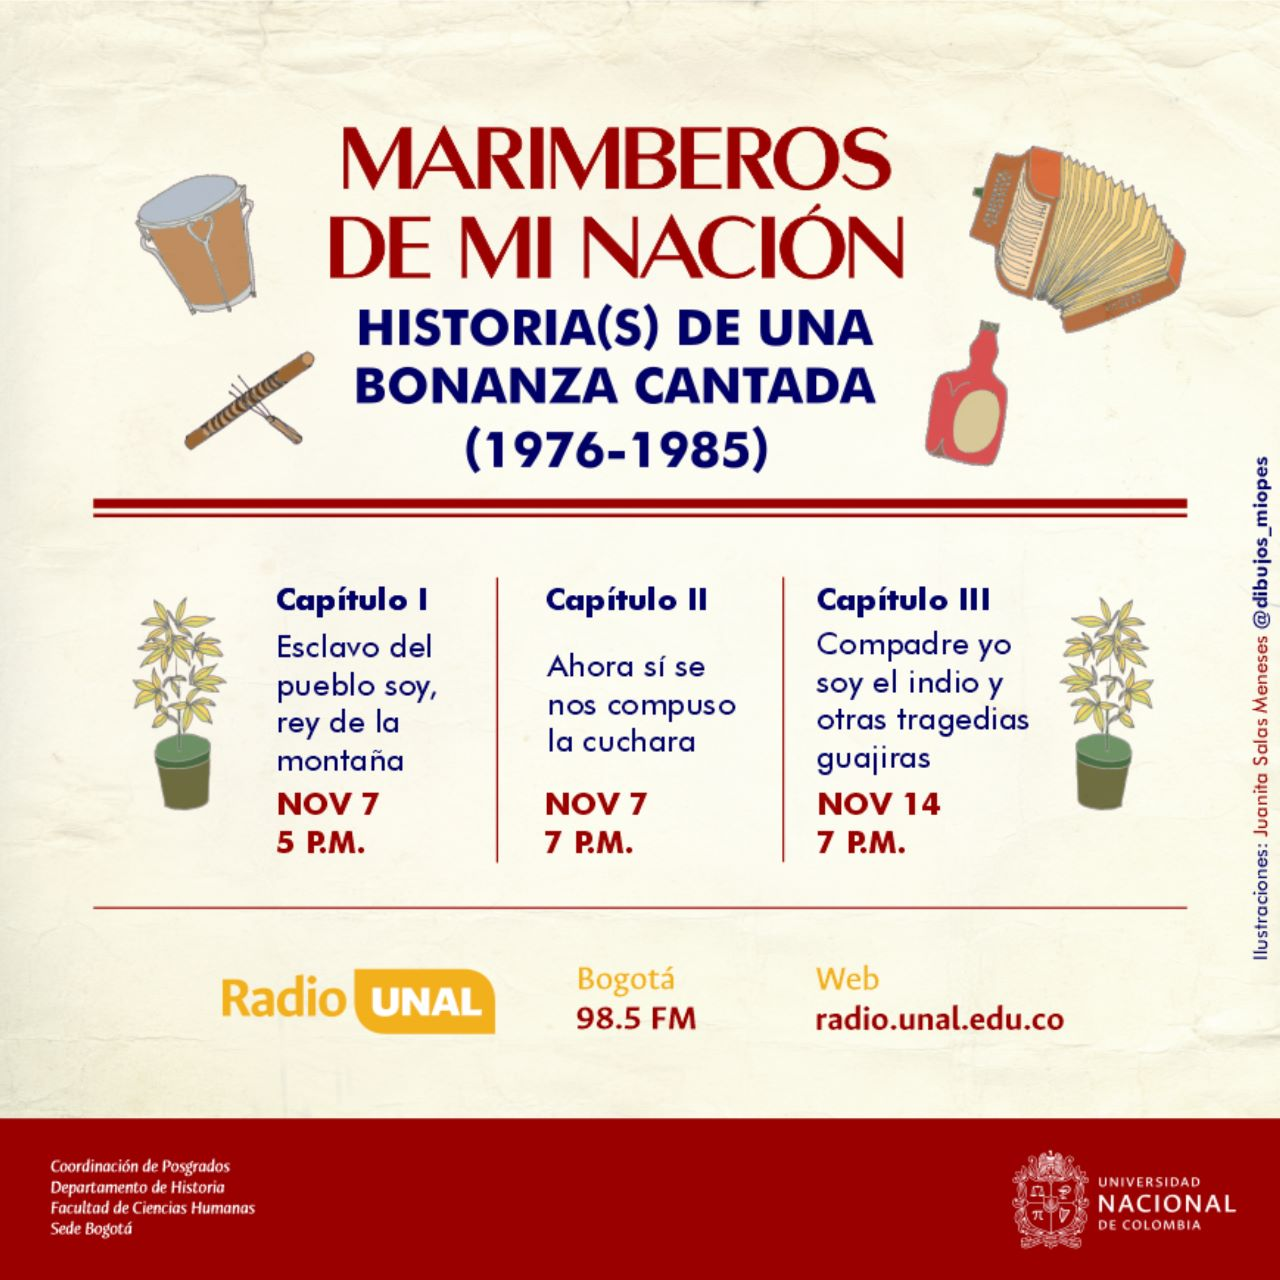 Transmisión de la Tesis Marimberos de mi nación: historia(s) de una bonanza cantada 1975-1985 por UN Radio